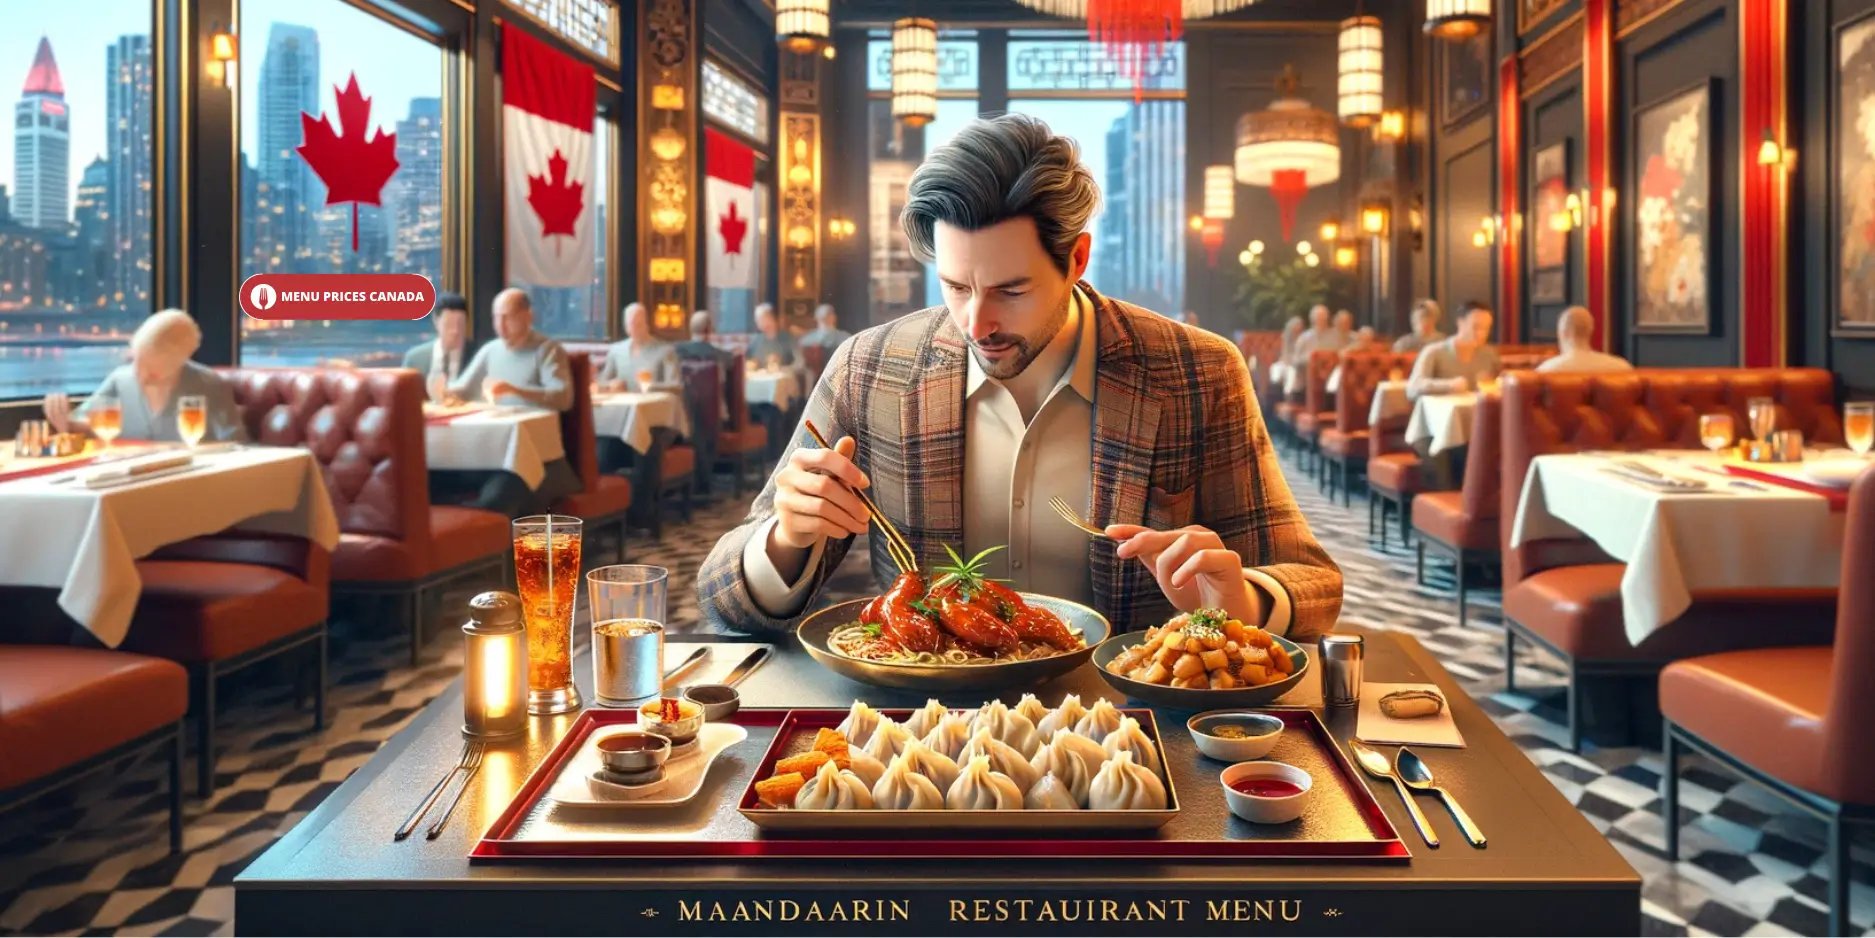 Mandarin-Restaurant-Menu-Prices-Canada